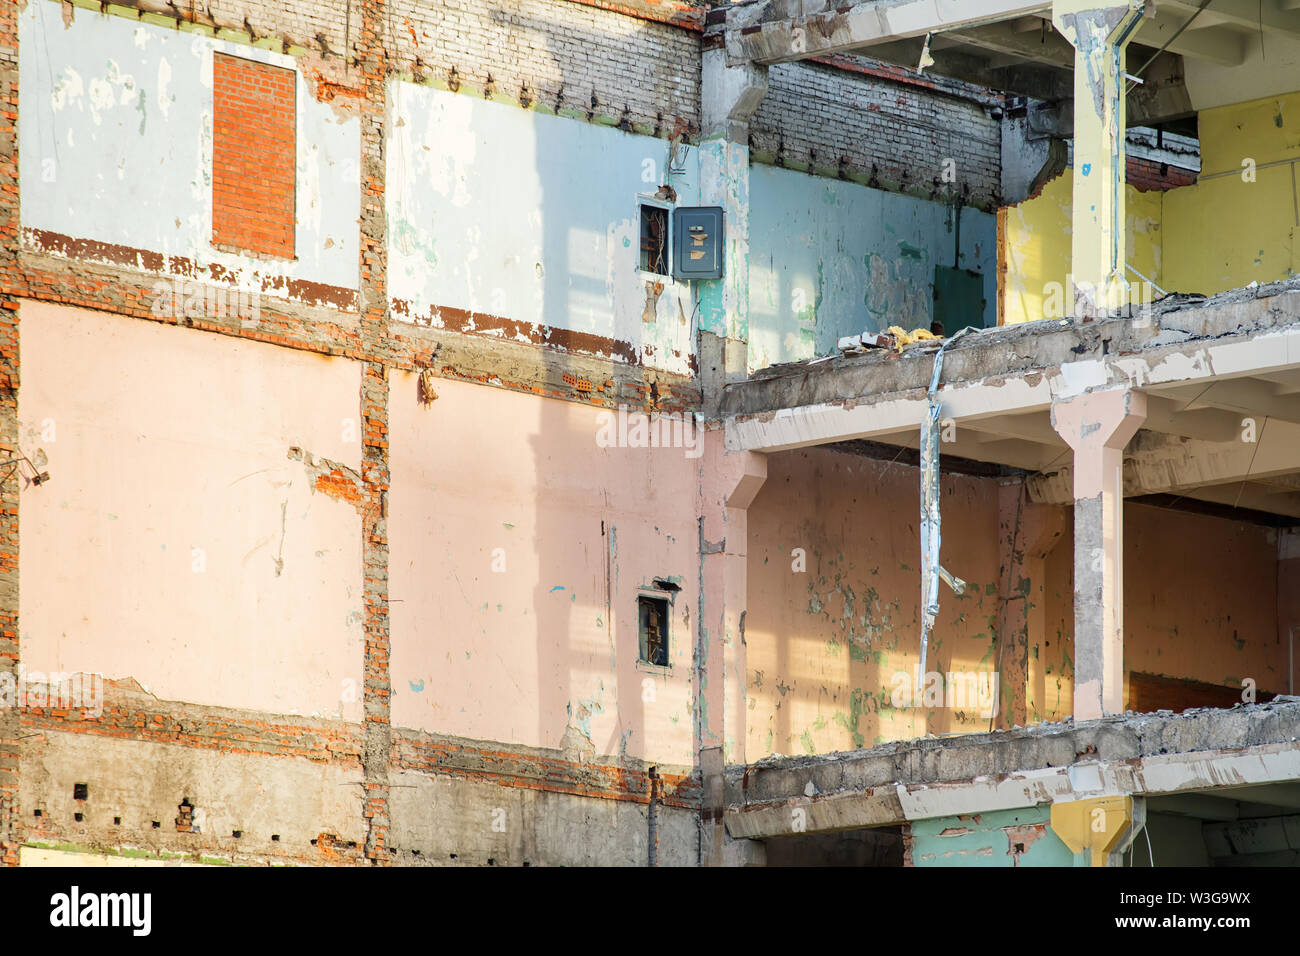 Bâtiment industriel moderne partiellement détruits avec des murs colorés. Thème la démolition ou la destruction Banque D'Images